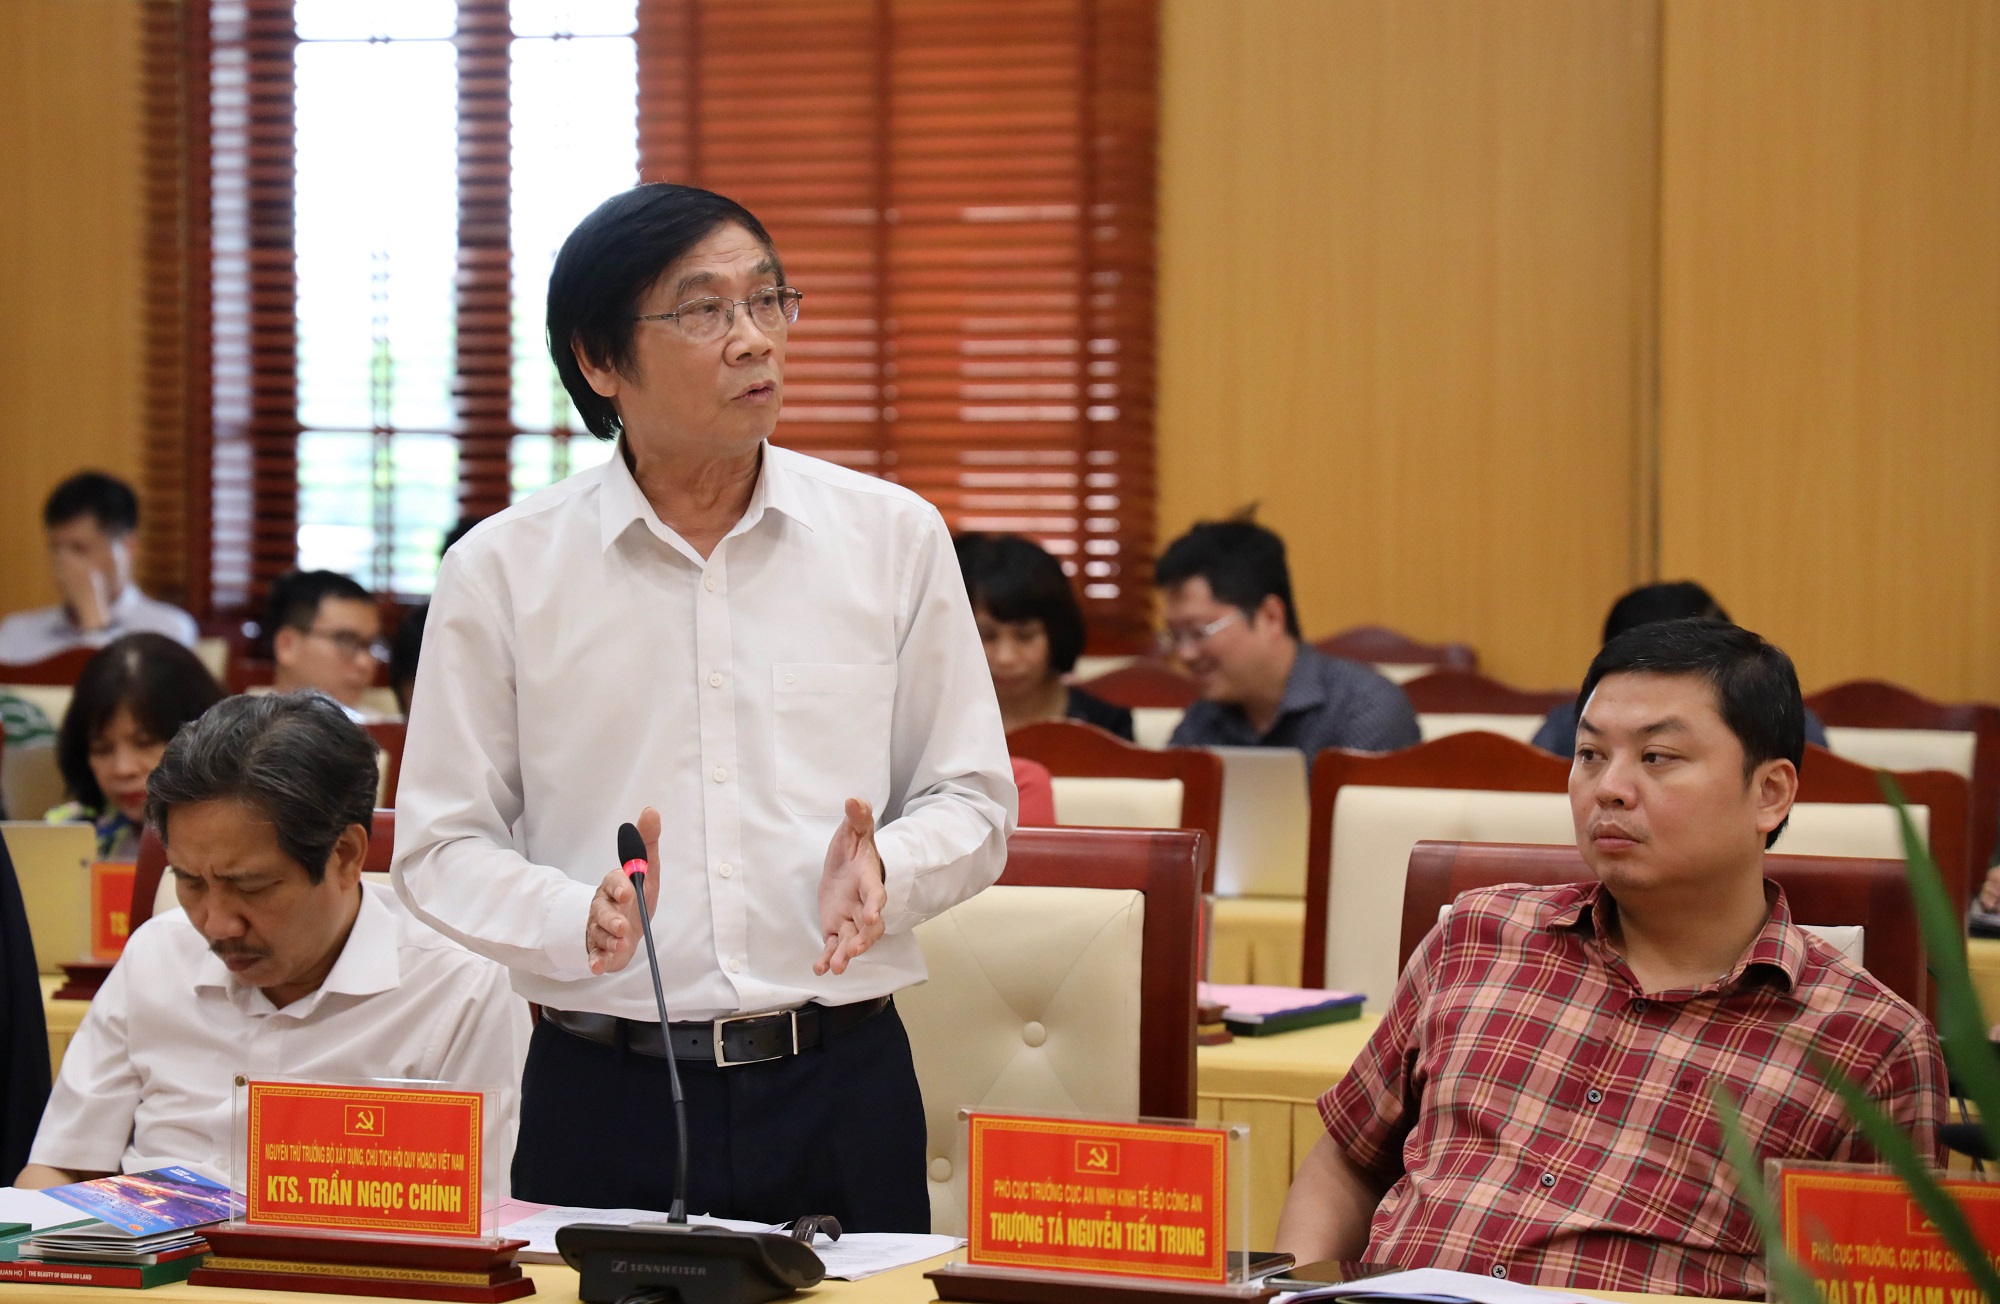 KTS Trần Ngọc Chính cho rằng cần phát triển mạng lưới nông thôn và đô thị vùng Đồng bằng sông Hồng